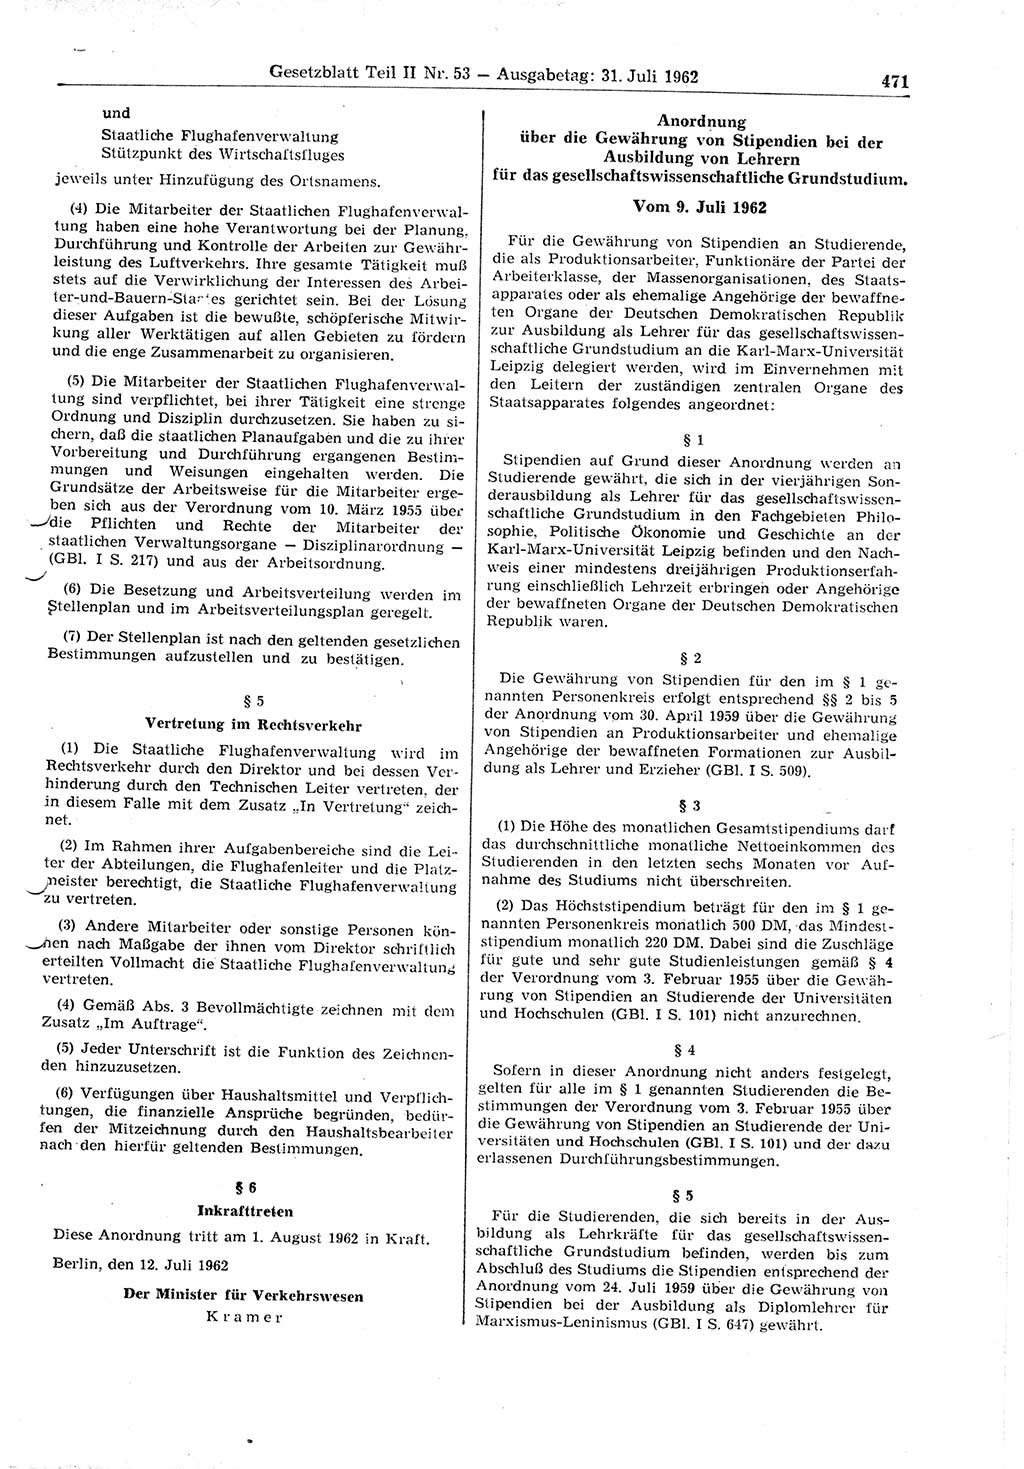 Gesetzblatt (GBl.) der Deutschen Demokratischen Republik (DDR) Teil ⅠⅠ 1962, Seite 471 (GBl. DDR ⅠⅠ 1962, S. 471)